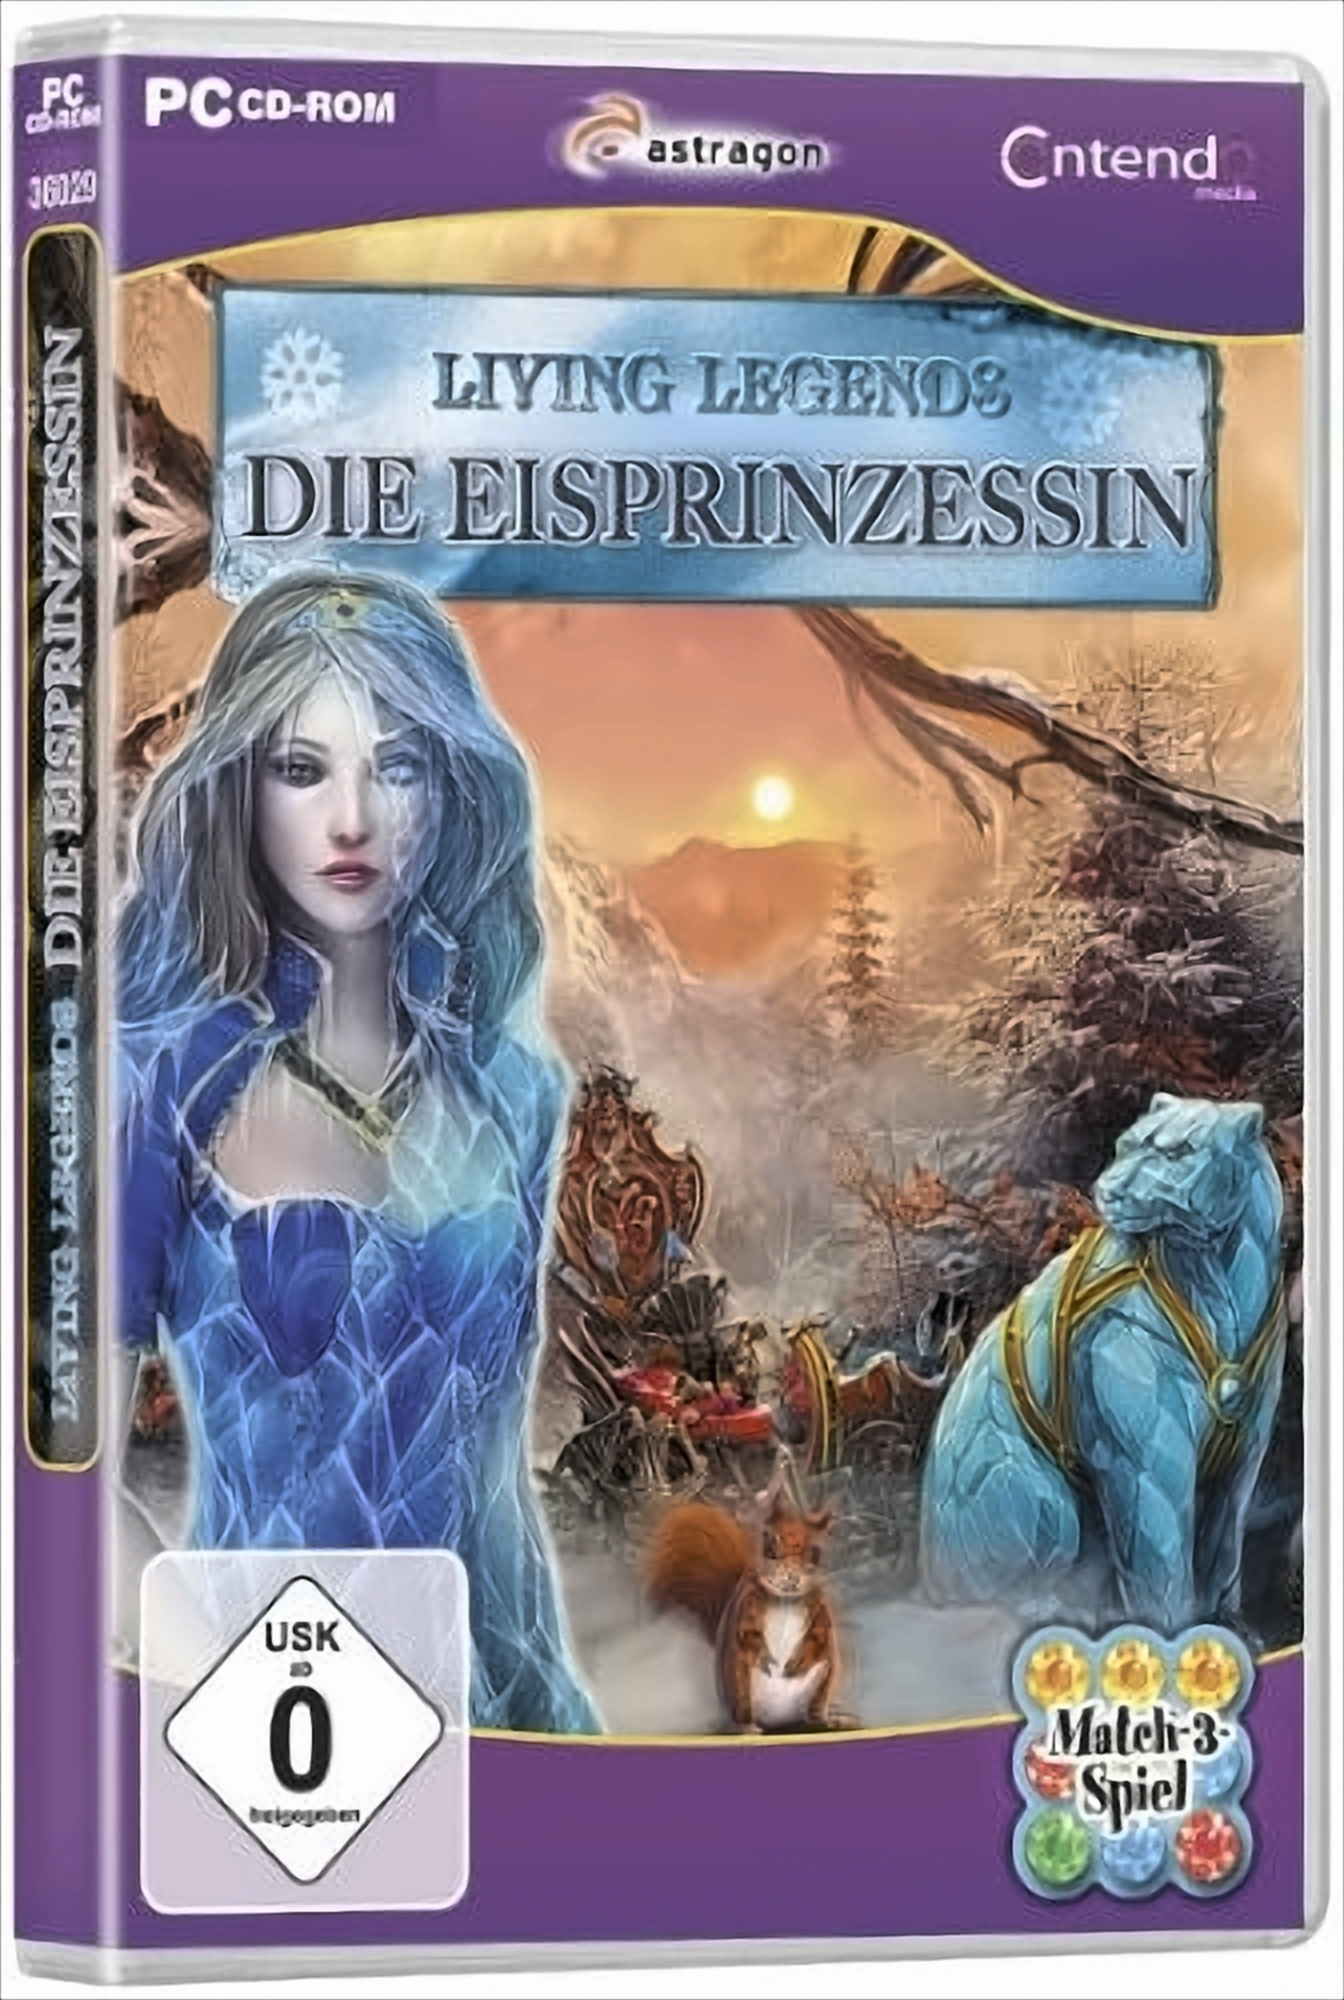 Living Die [PC] Eisprinzessin Legends: -